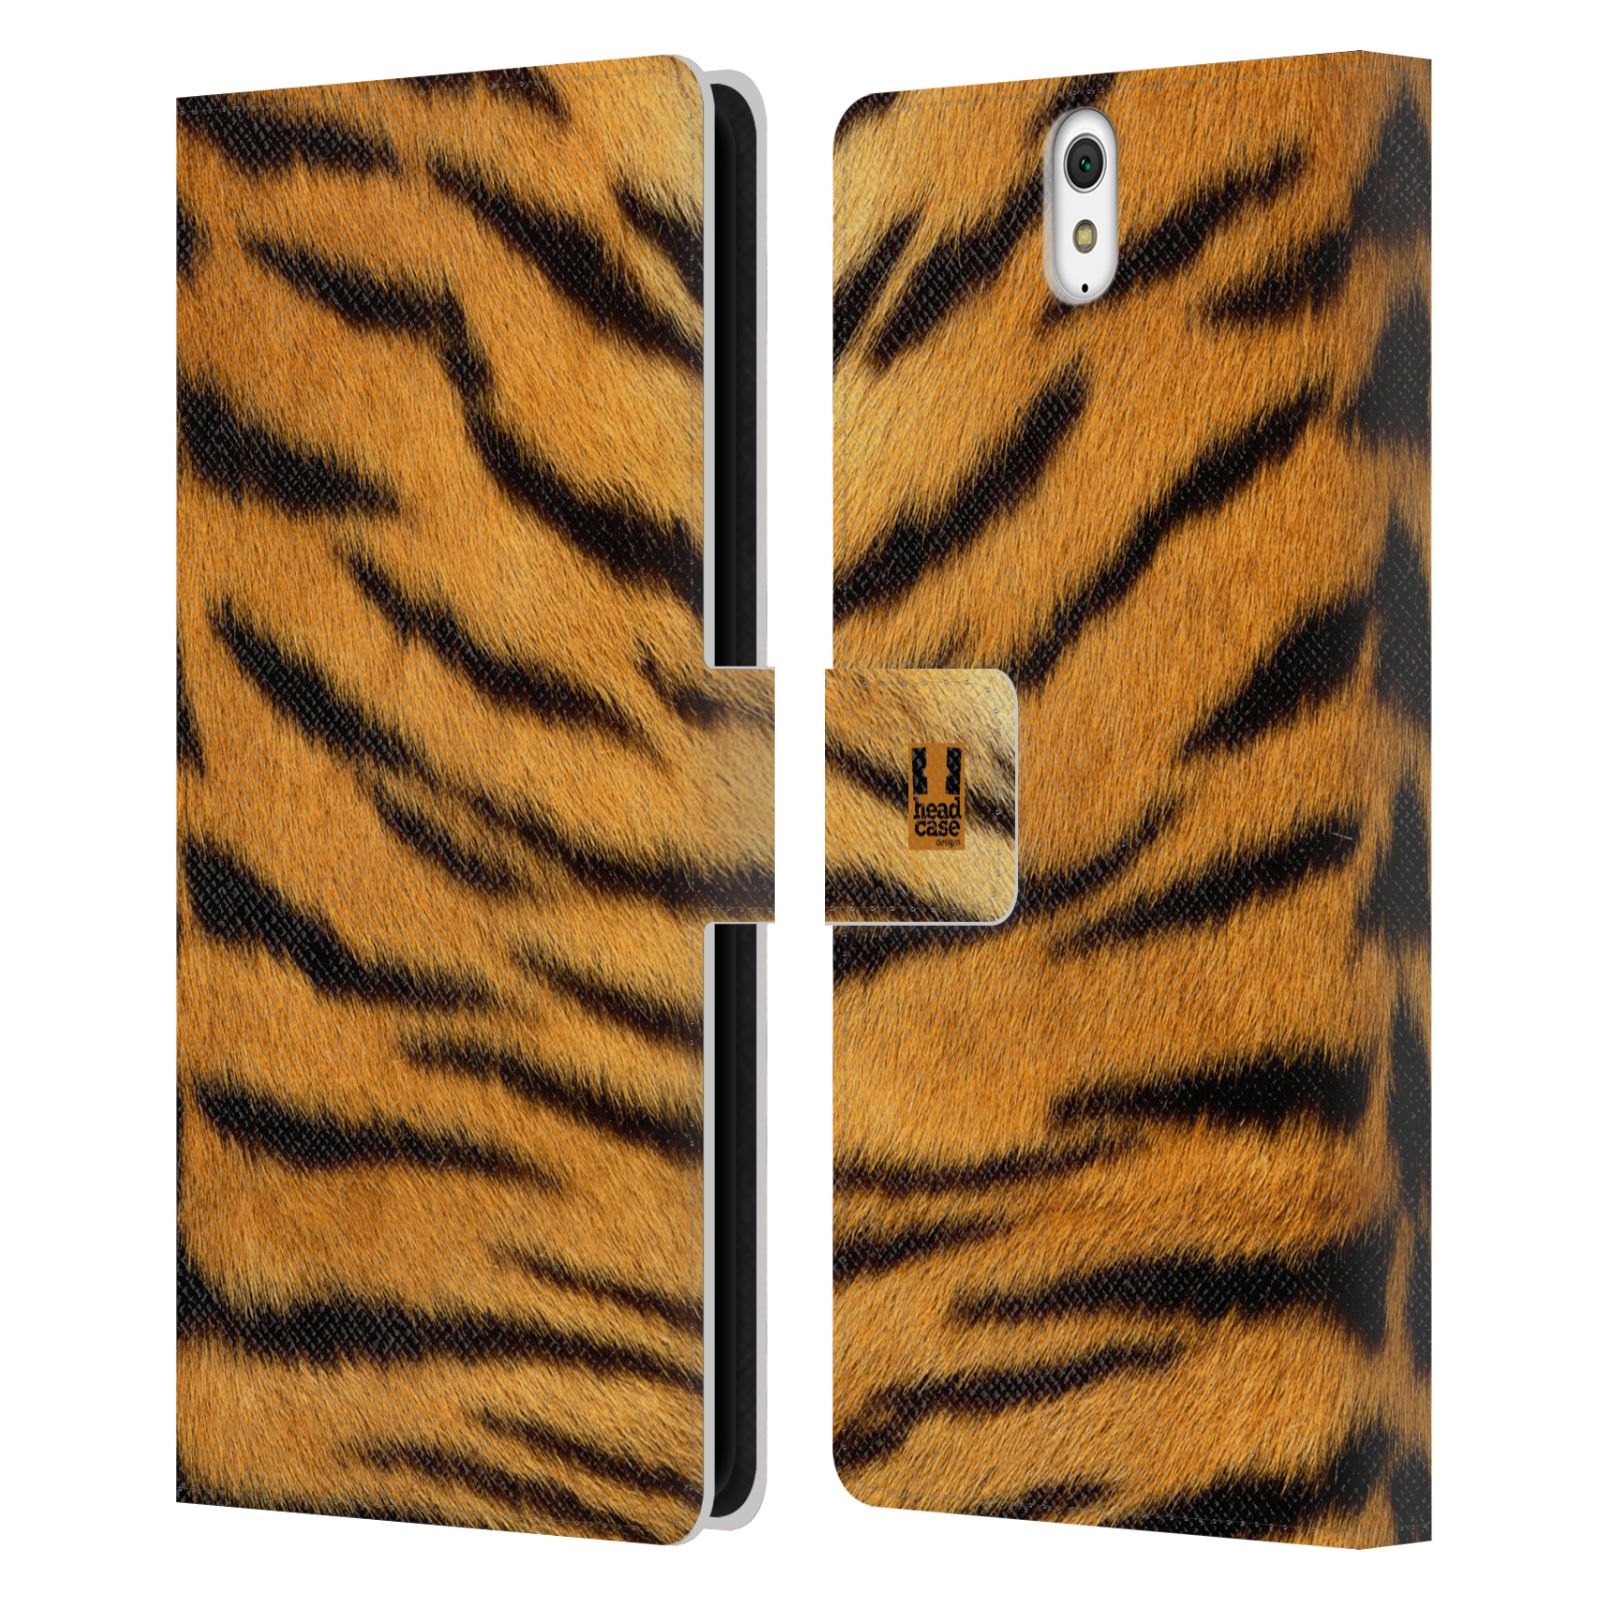 HEAD CASE Flipové pouzdro pro mobil SONY XPERIA C5 Ultra zvíře srst divoká kolekce tygr